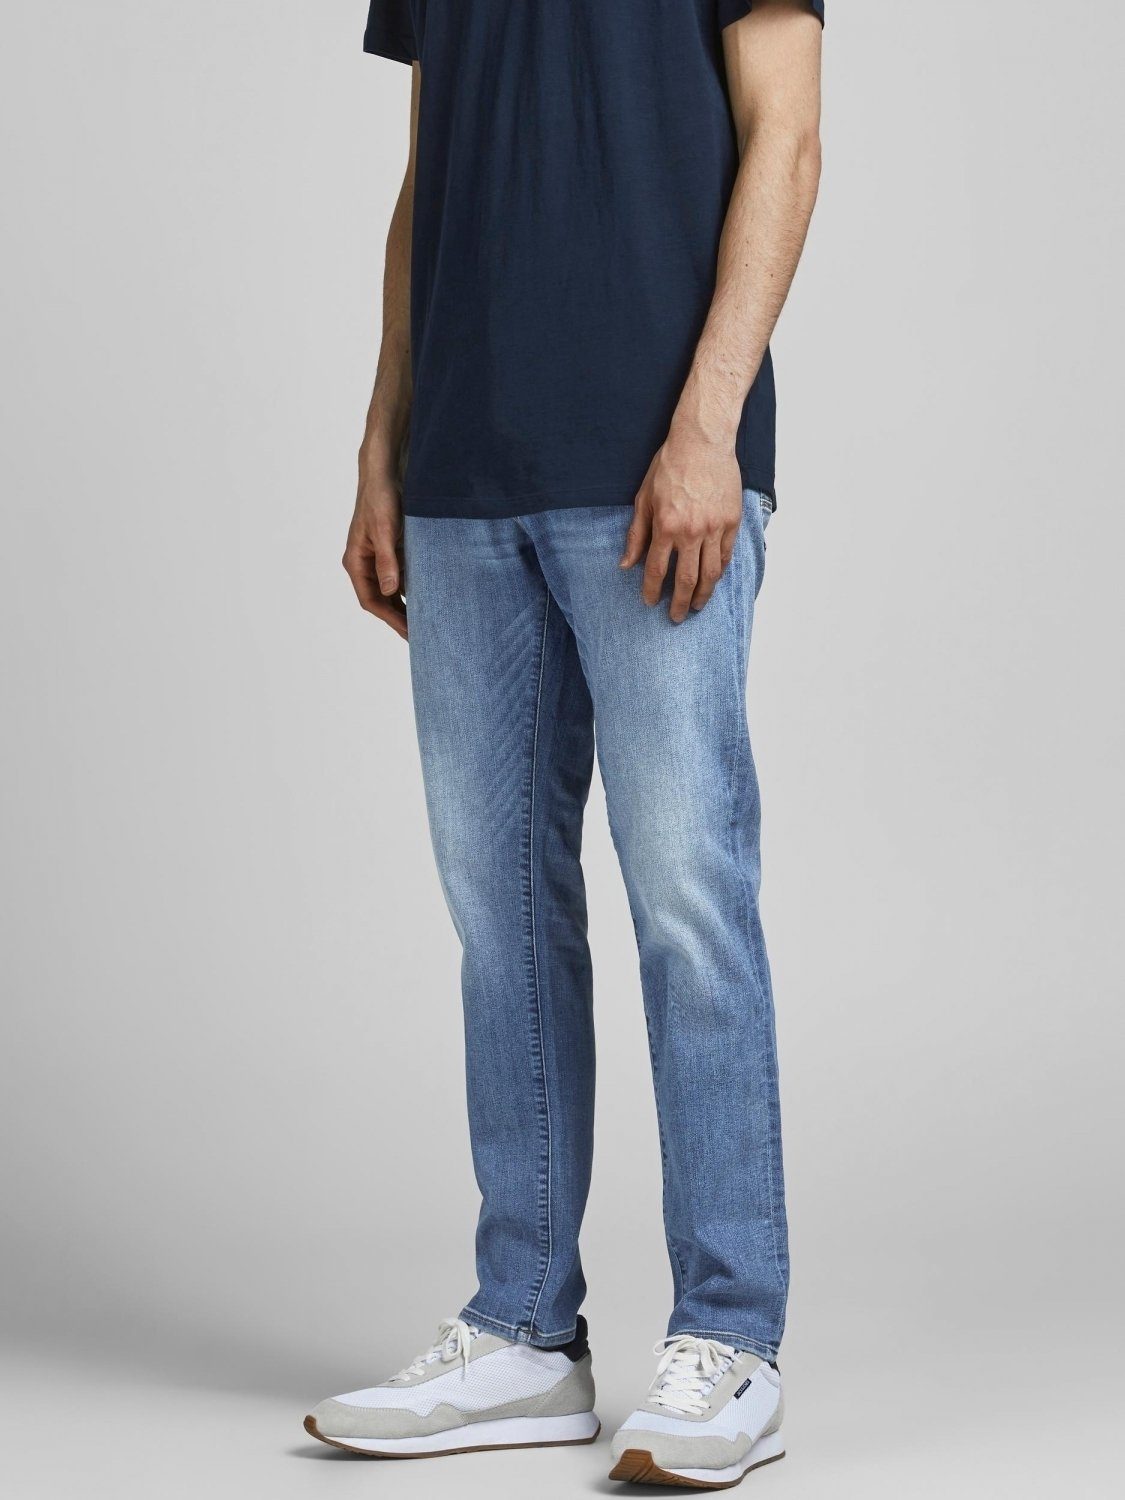 & SPK Jones Jack Slim 5-Pocket-Jeans FOX Jeans Fit Style Herren 604 GLENN 50SPS 5-Pockets